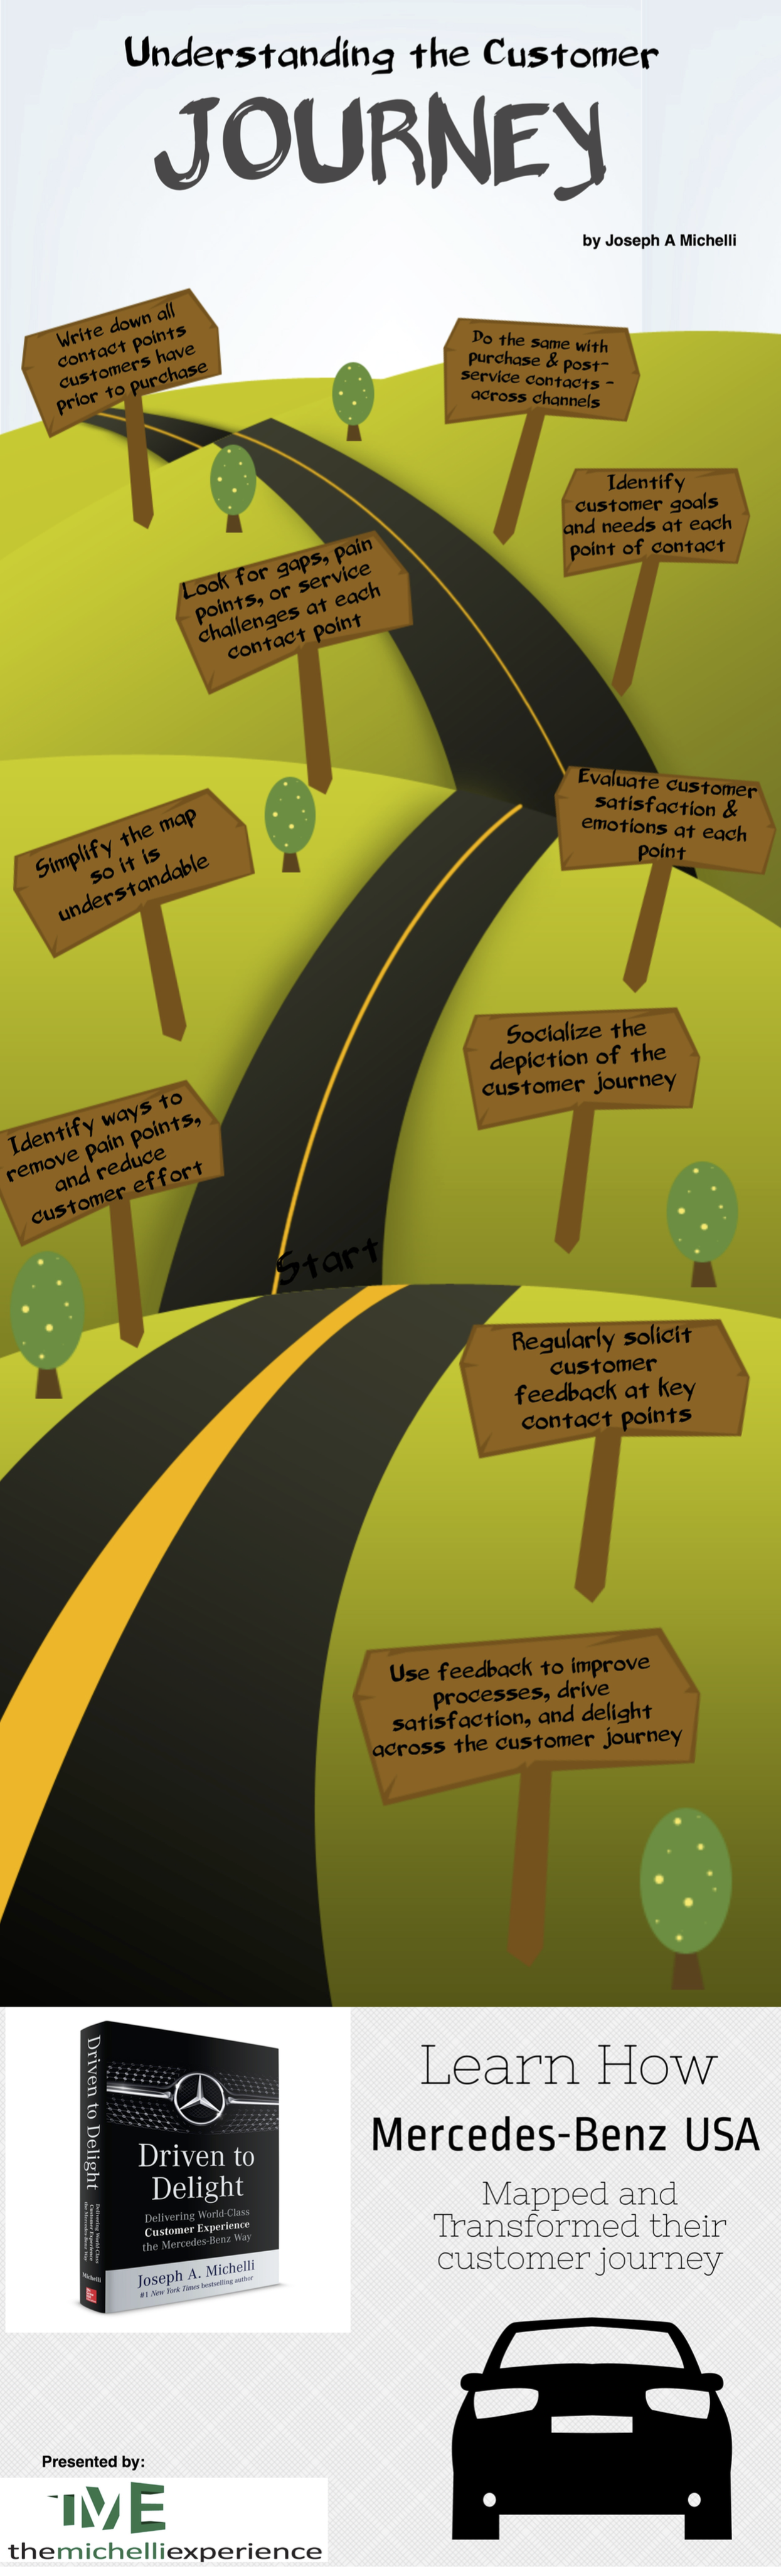 Understanding the Customer Journey Infographic